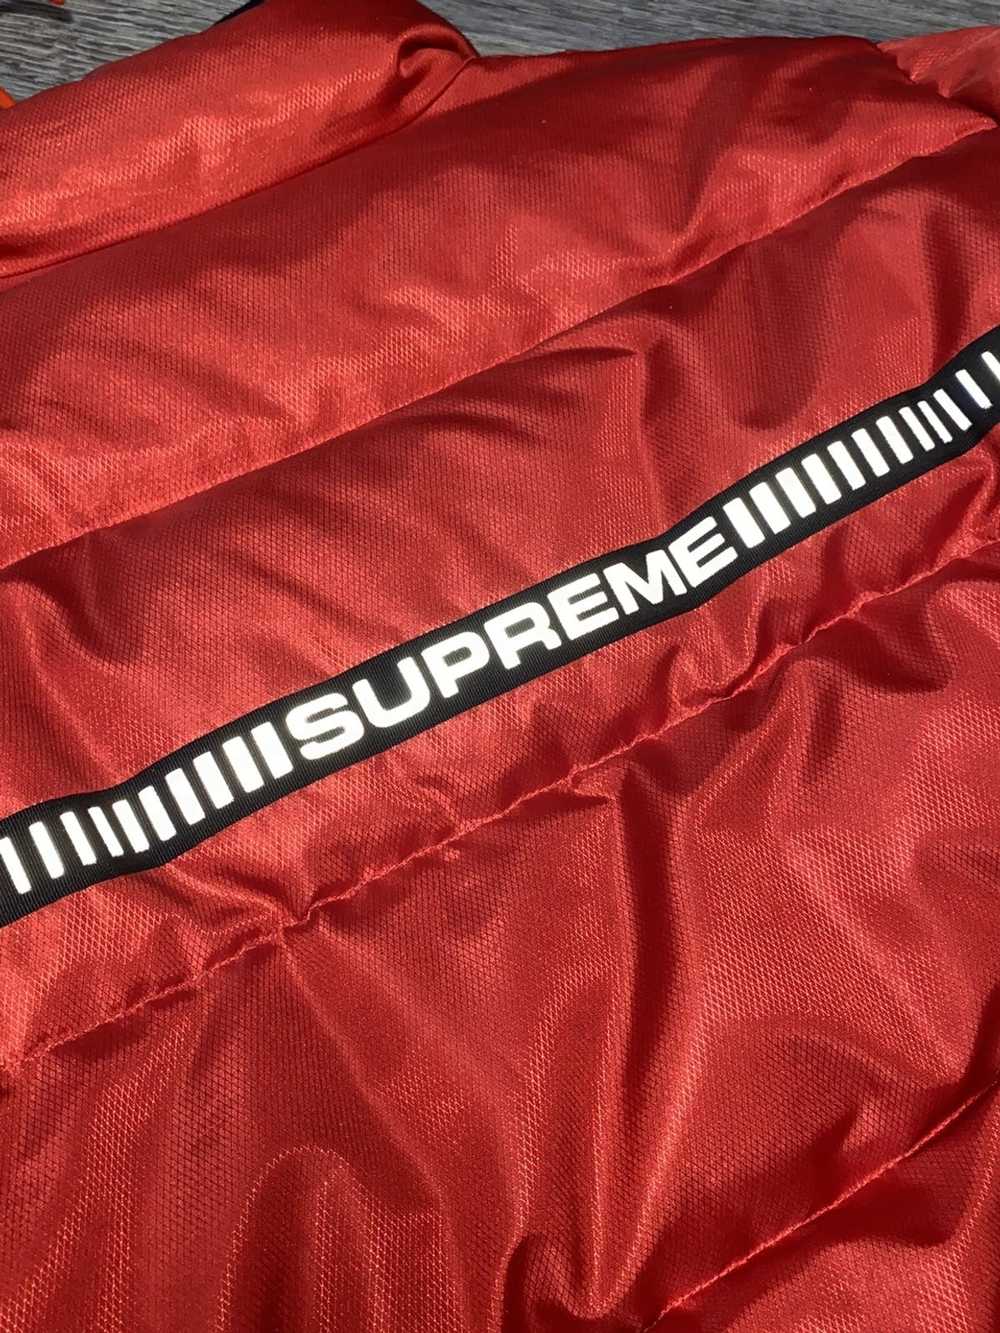 Supreme Supreme puff jacket - image 7